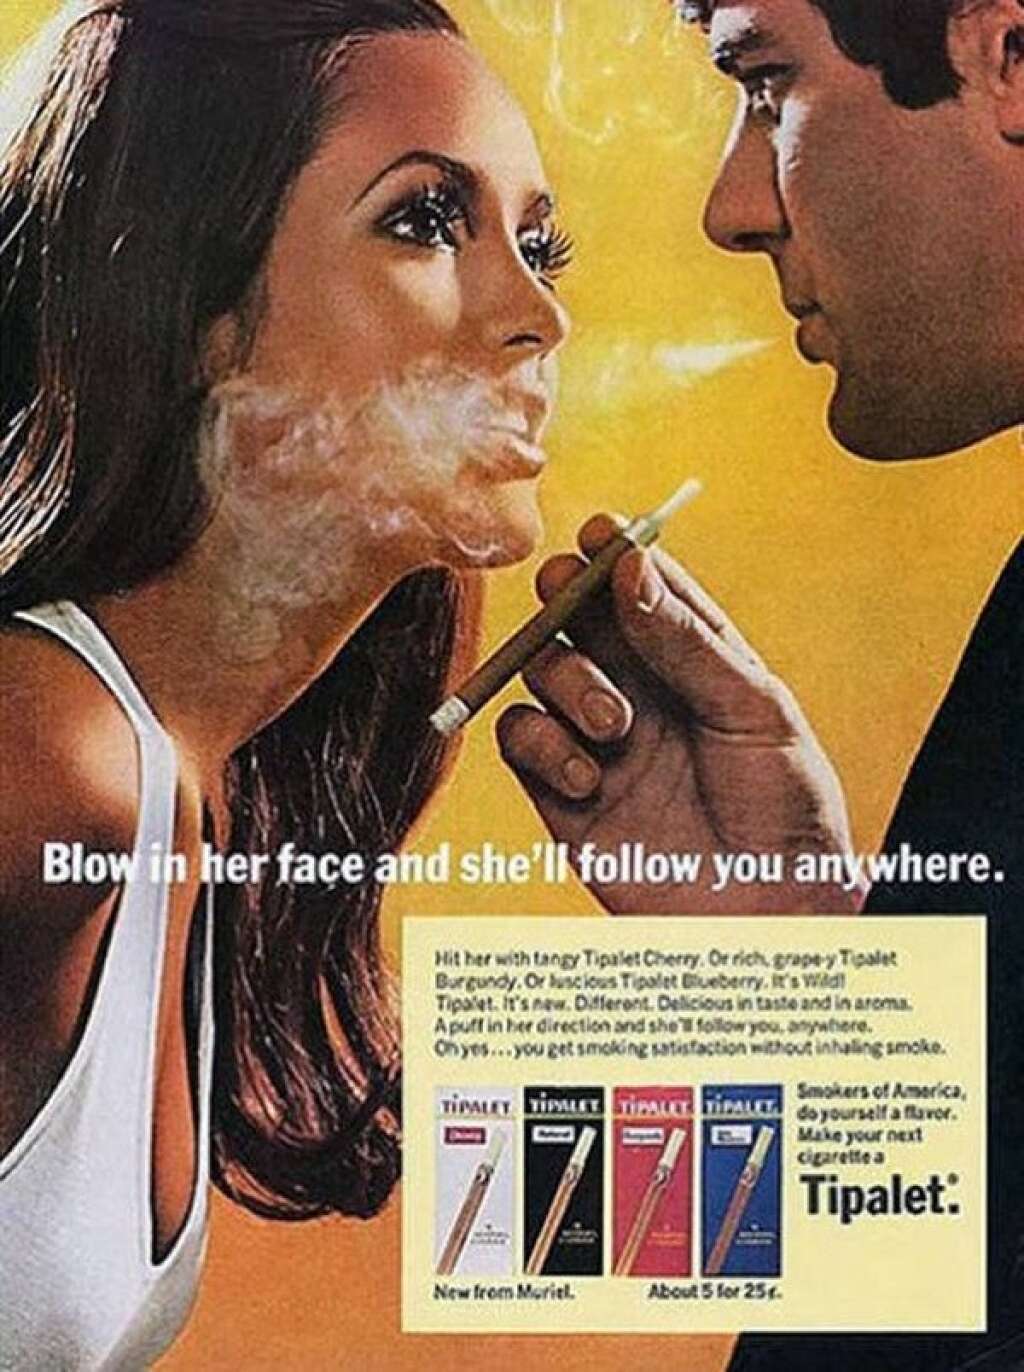 Tipalet - "Si vous lui soufflez au visage elle vous suivra partout". C'est bien connu, les femmes adorent se faire enfumer.